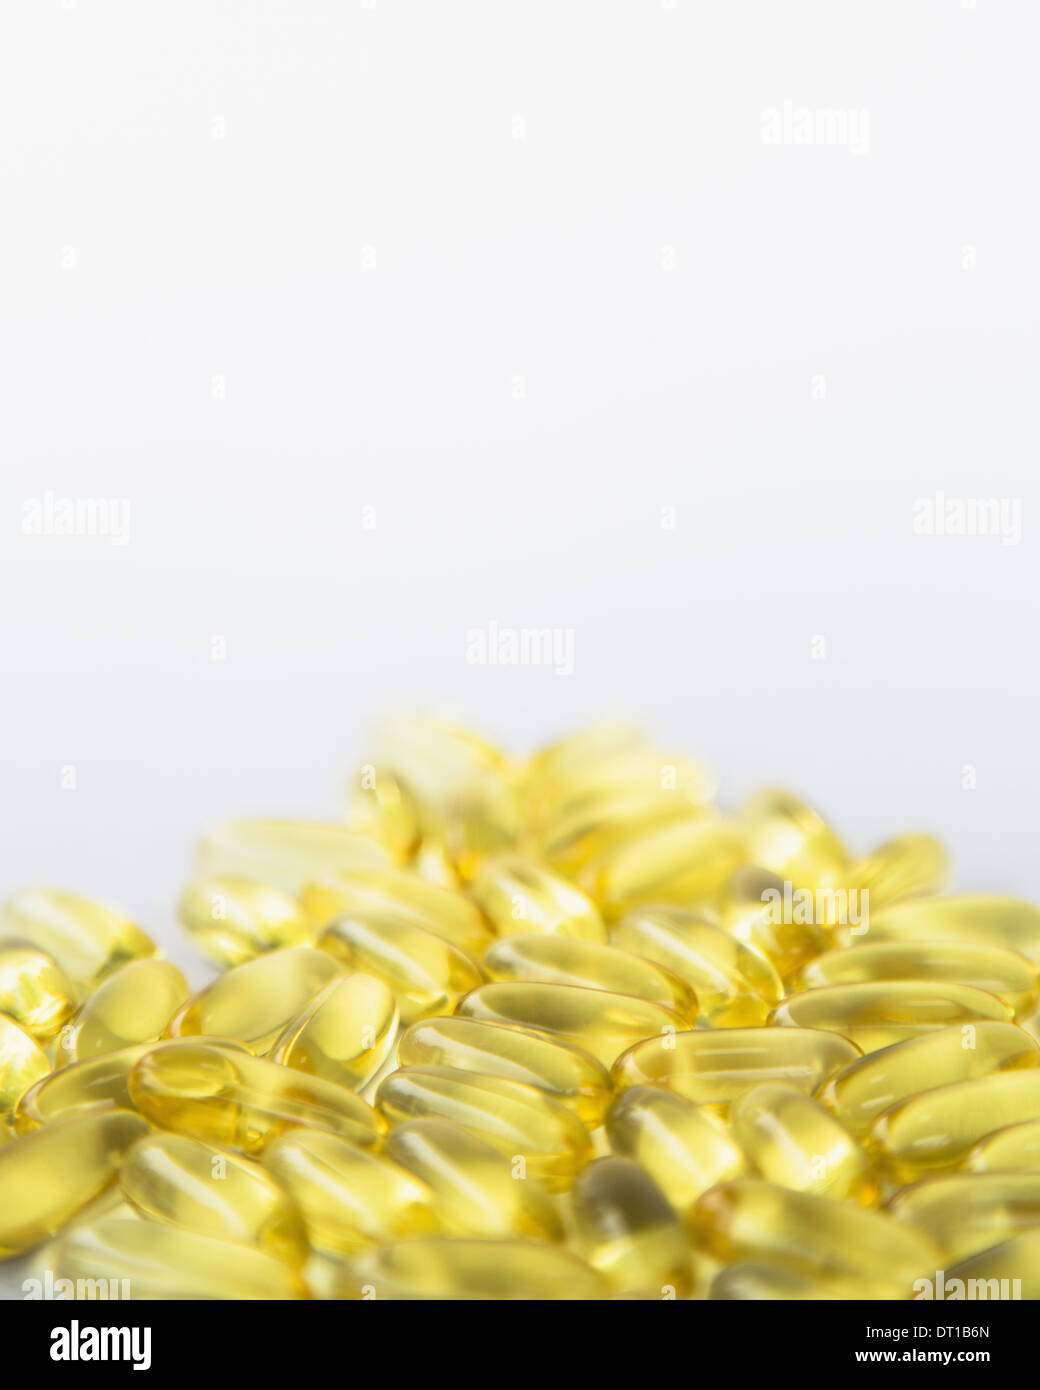 Fish oil providing Omega-3 in softgel capsules Stock Photo